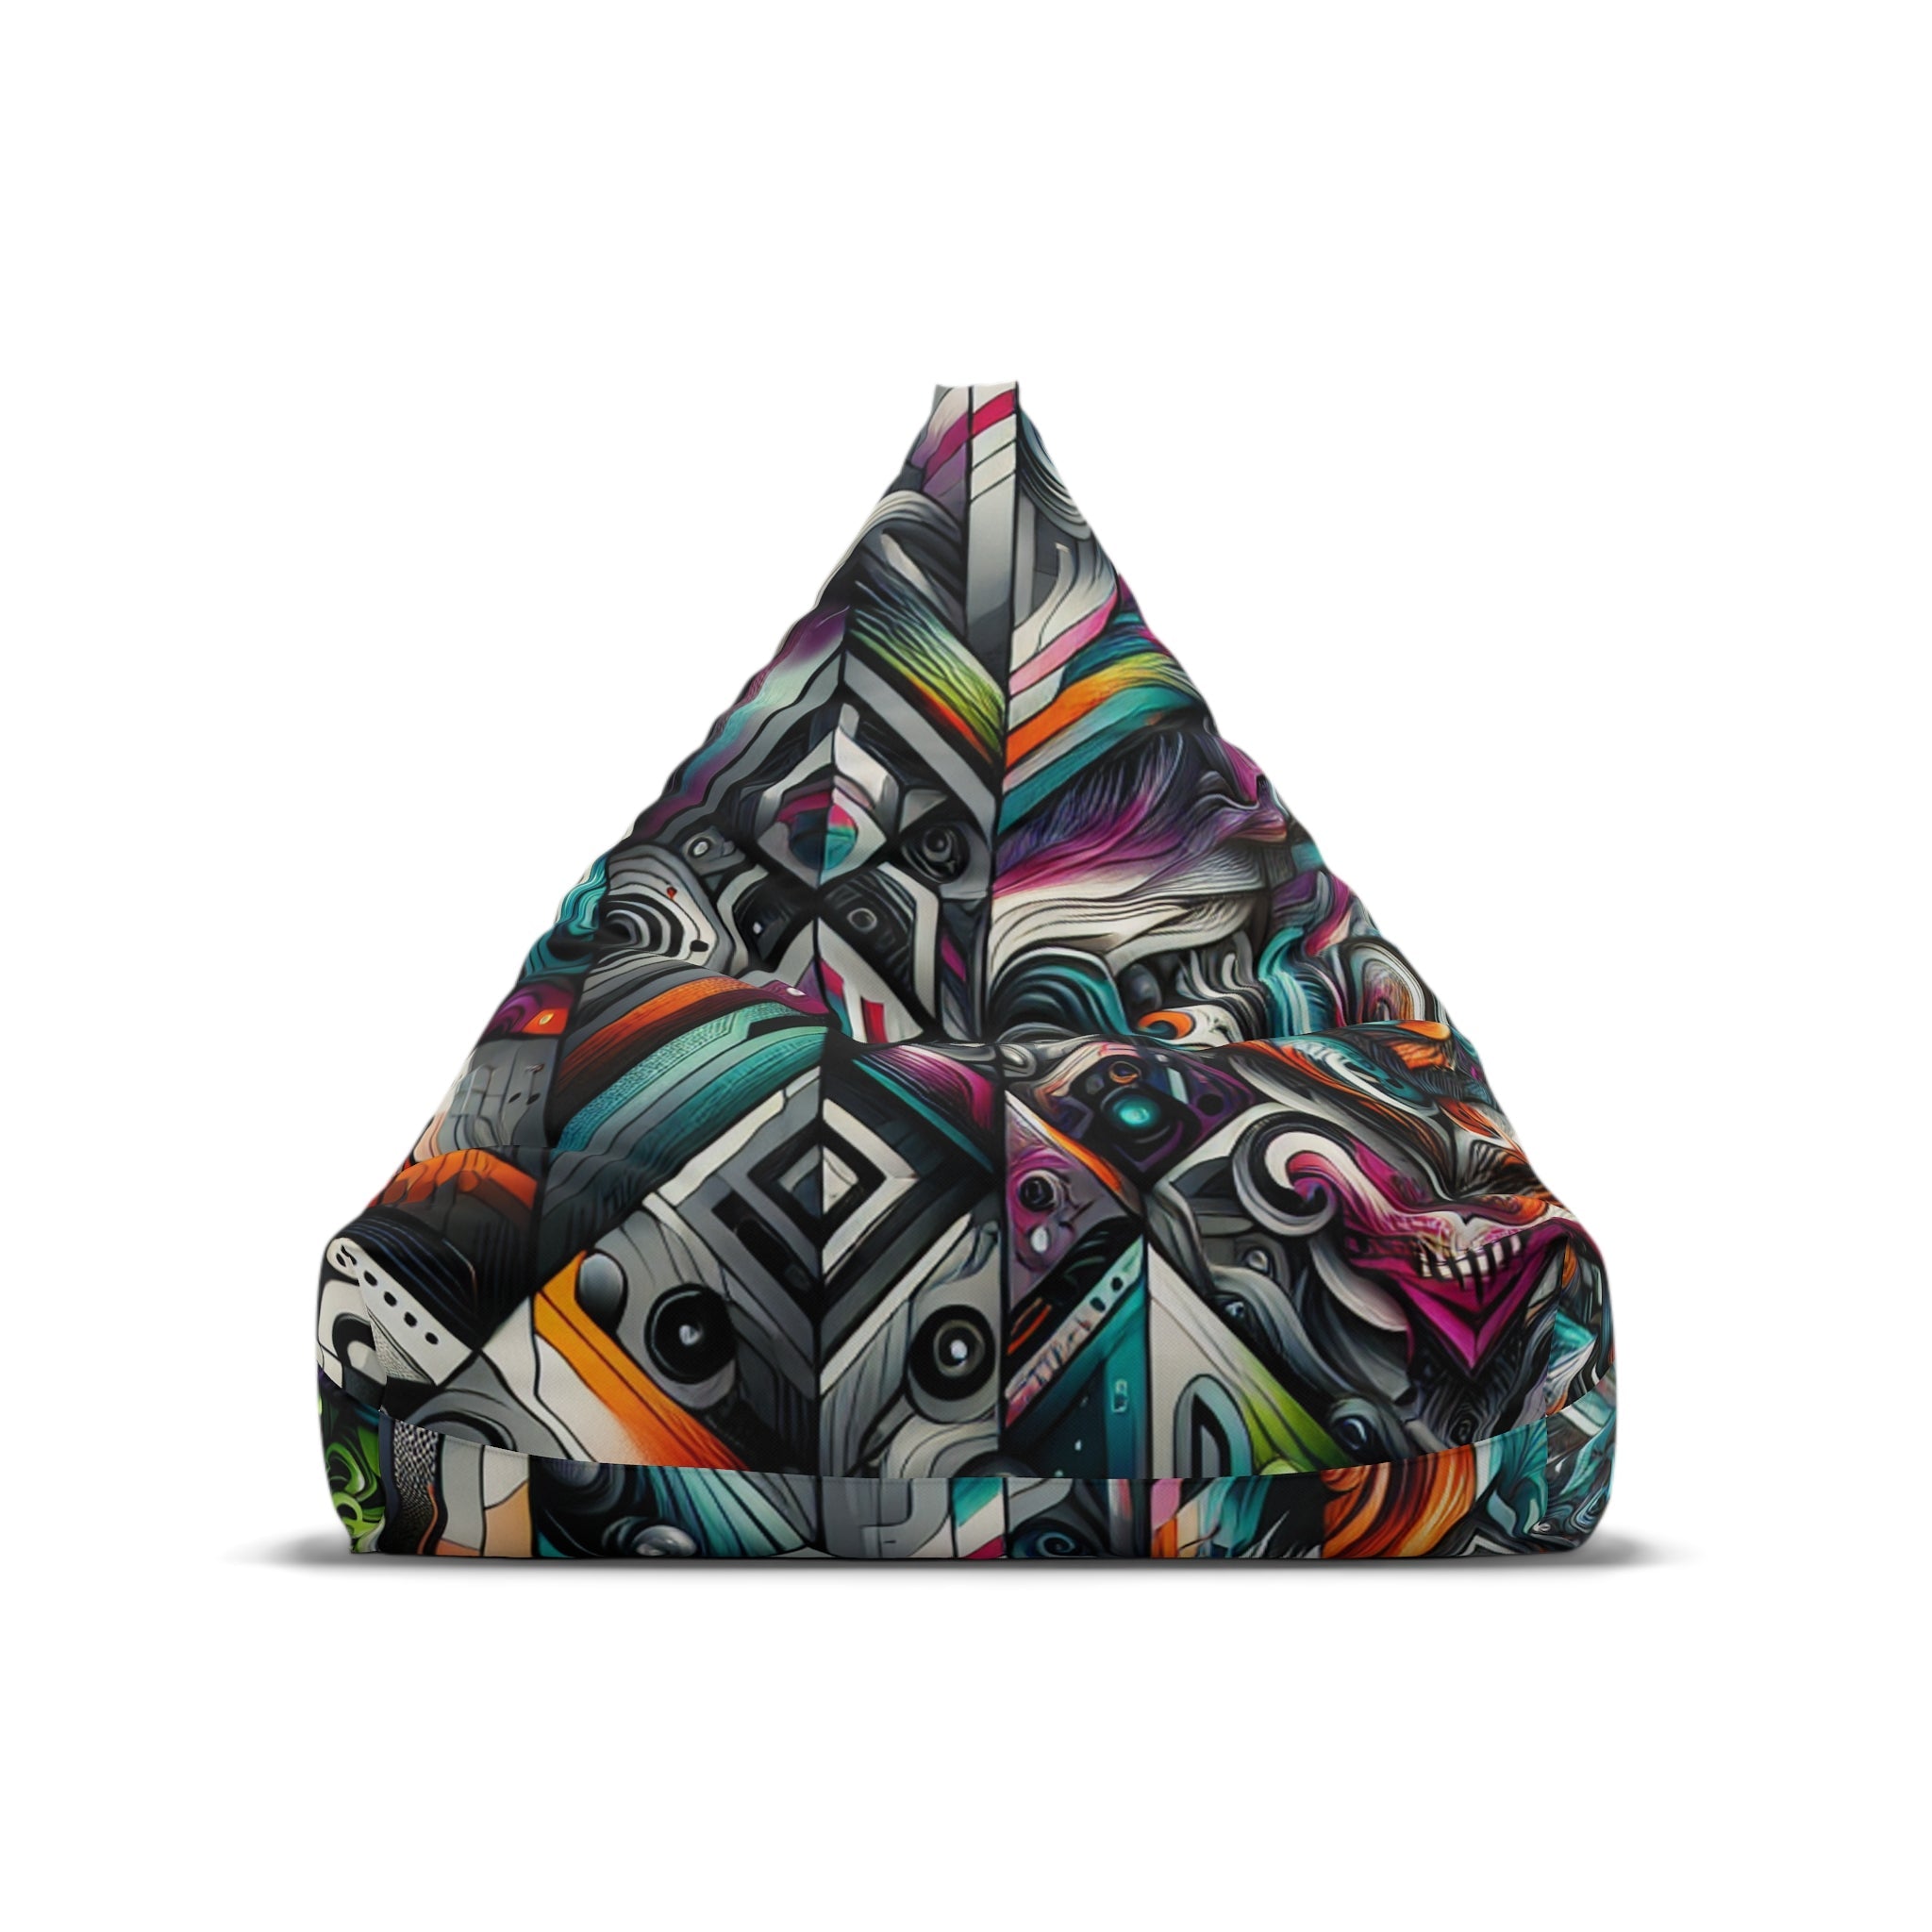 Max ’Graffiti’ Baxter - Graffiti Bean Bags Chair Cover